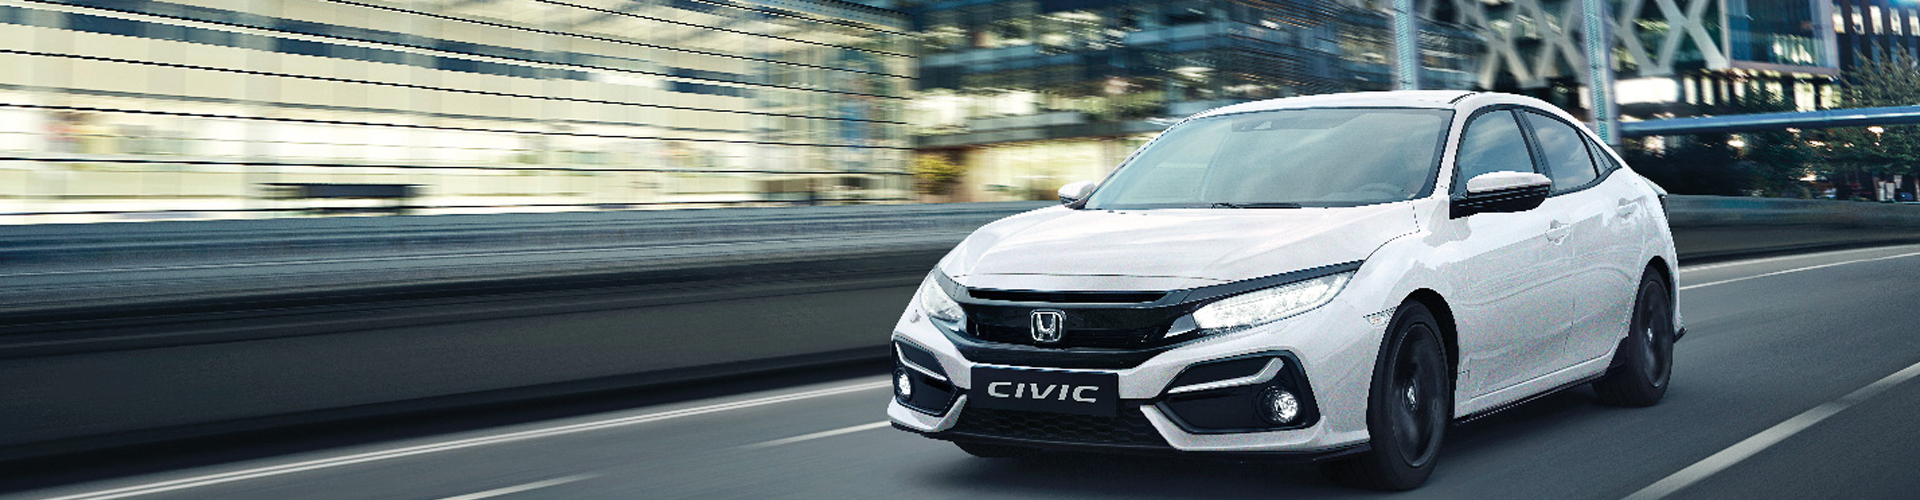 Honda Civic Hatchback Kullanıcı Yorumları ve Görüşleri ...